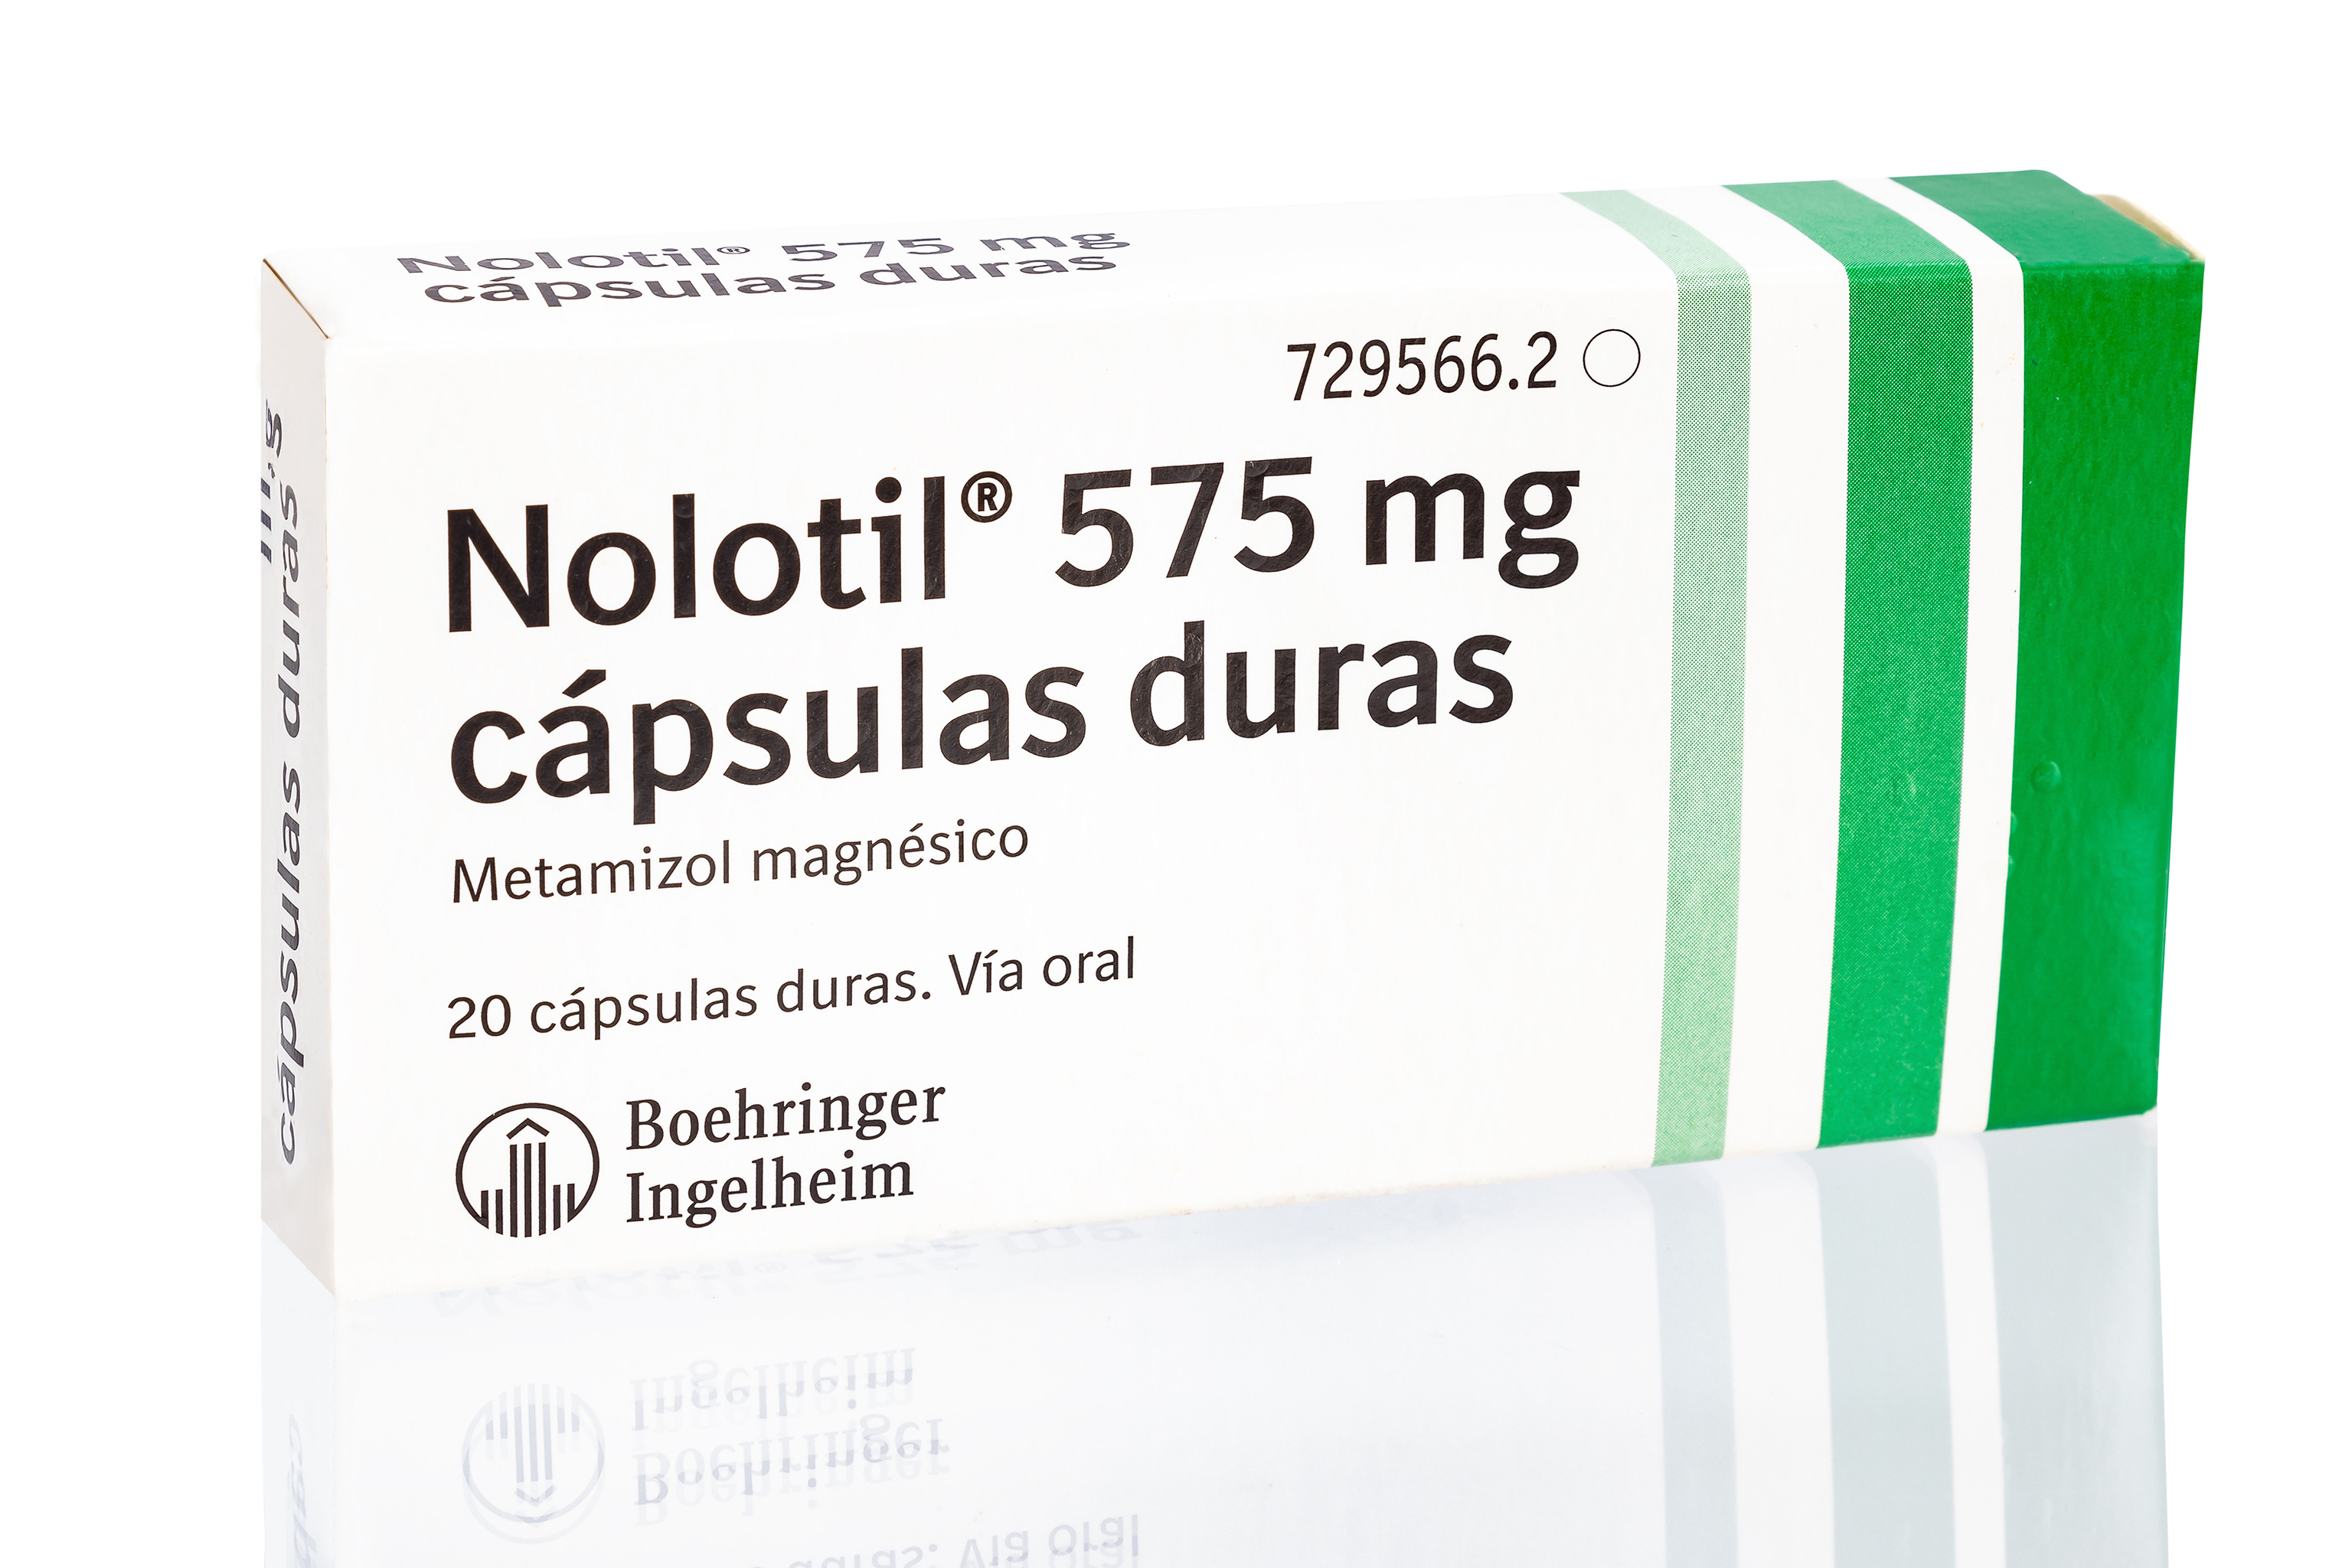 Caja de cpsulas de Nolotil 575 mg.